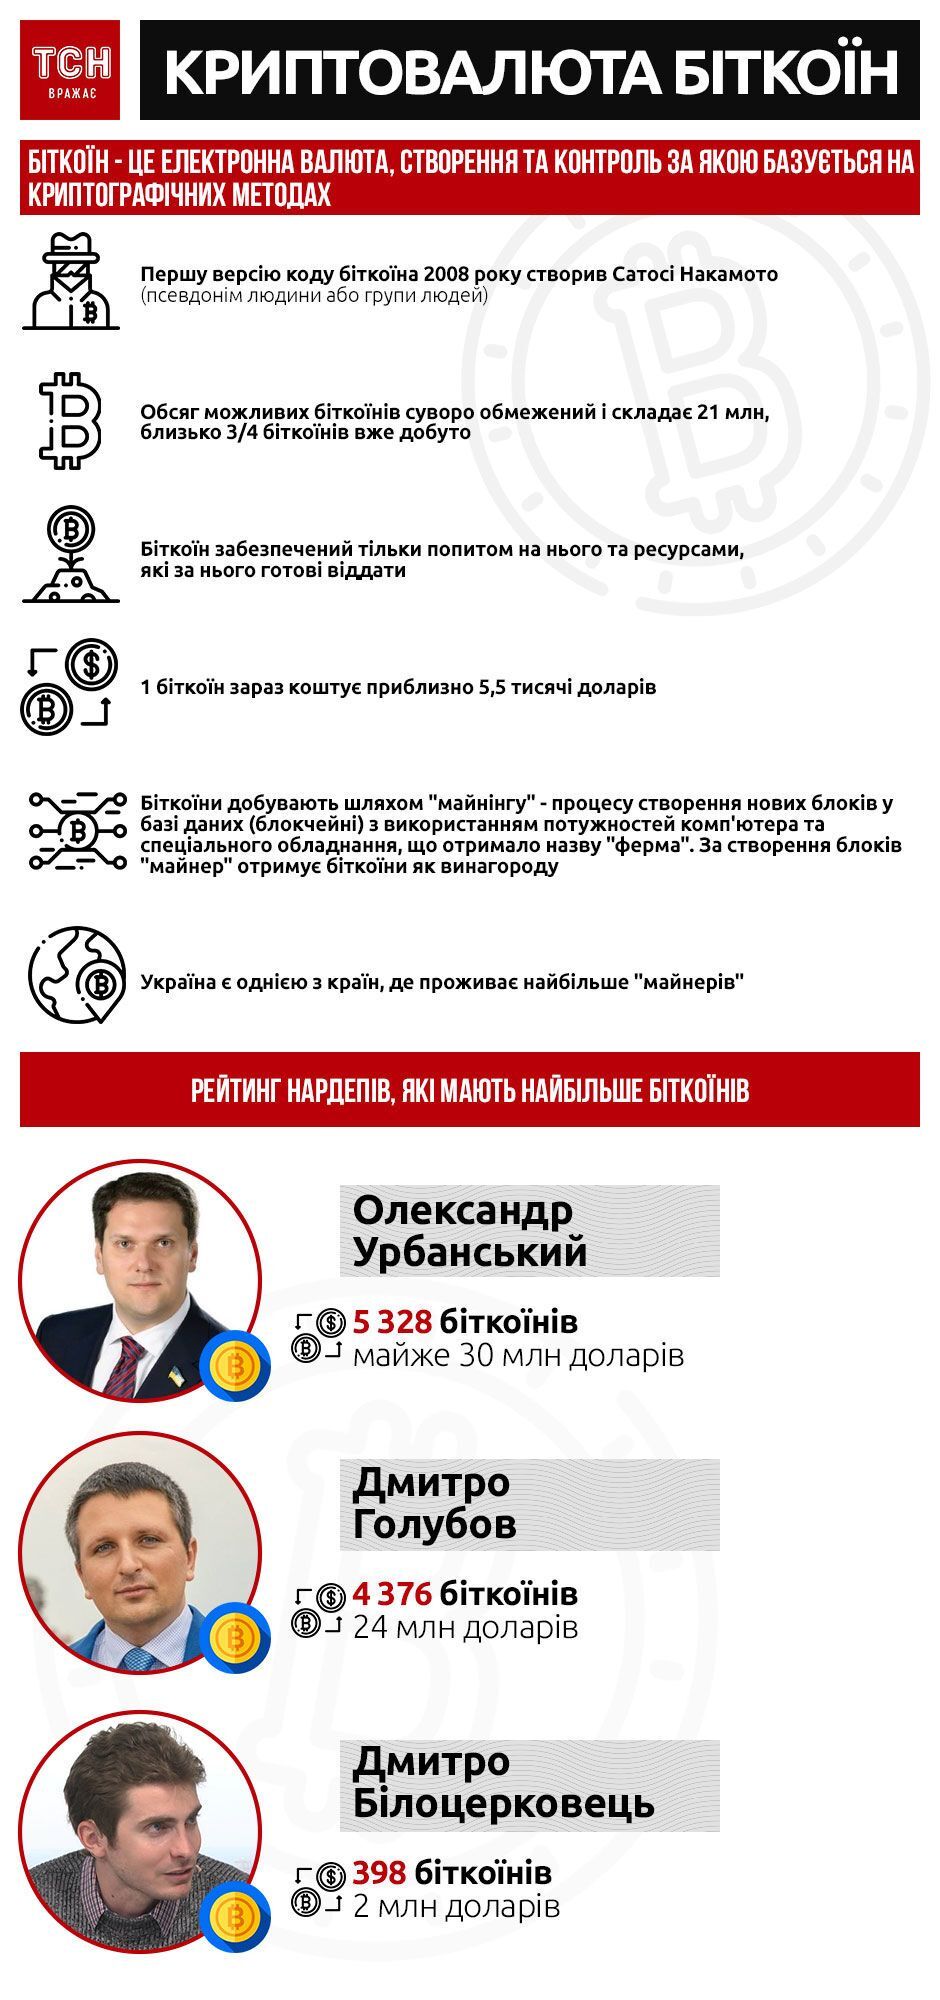 На миллионы долларов: украинские депутаты начали активно покупать биткоины